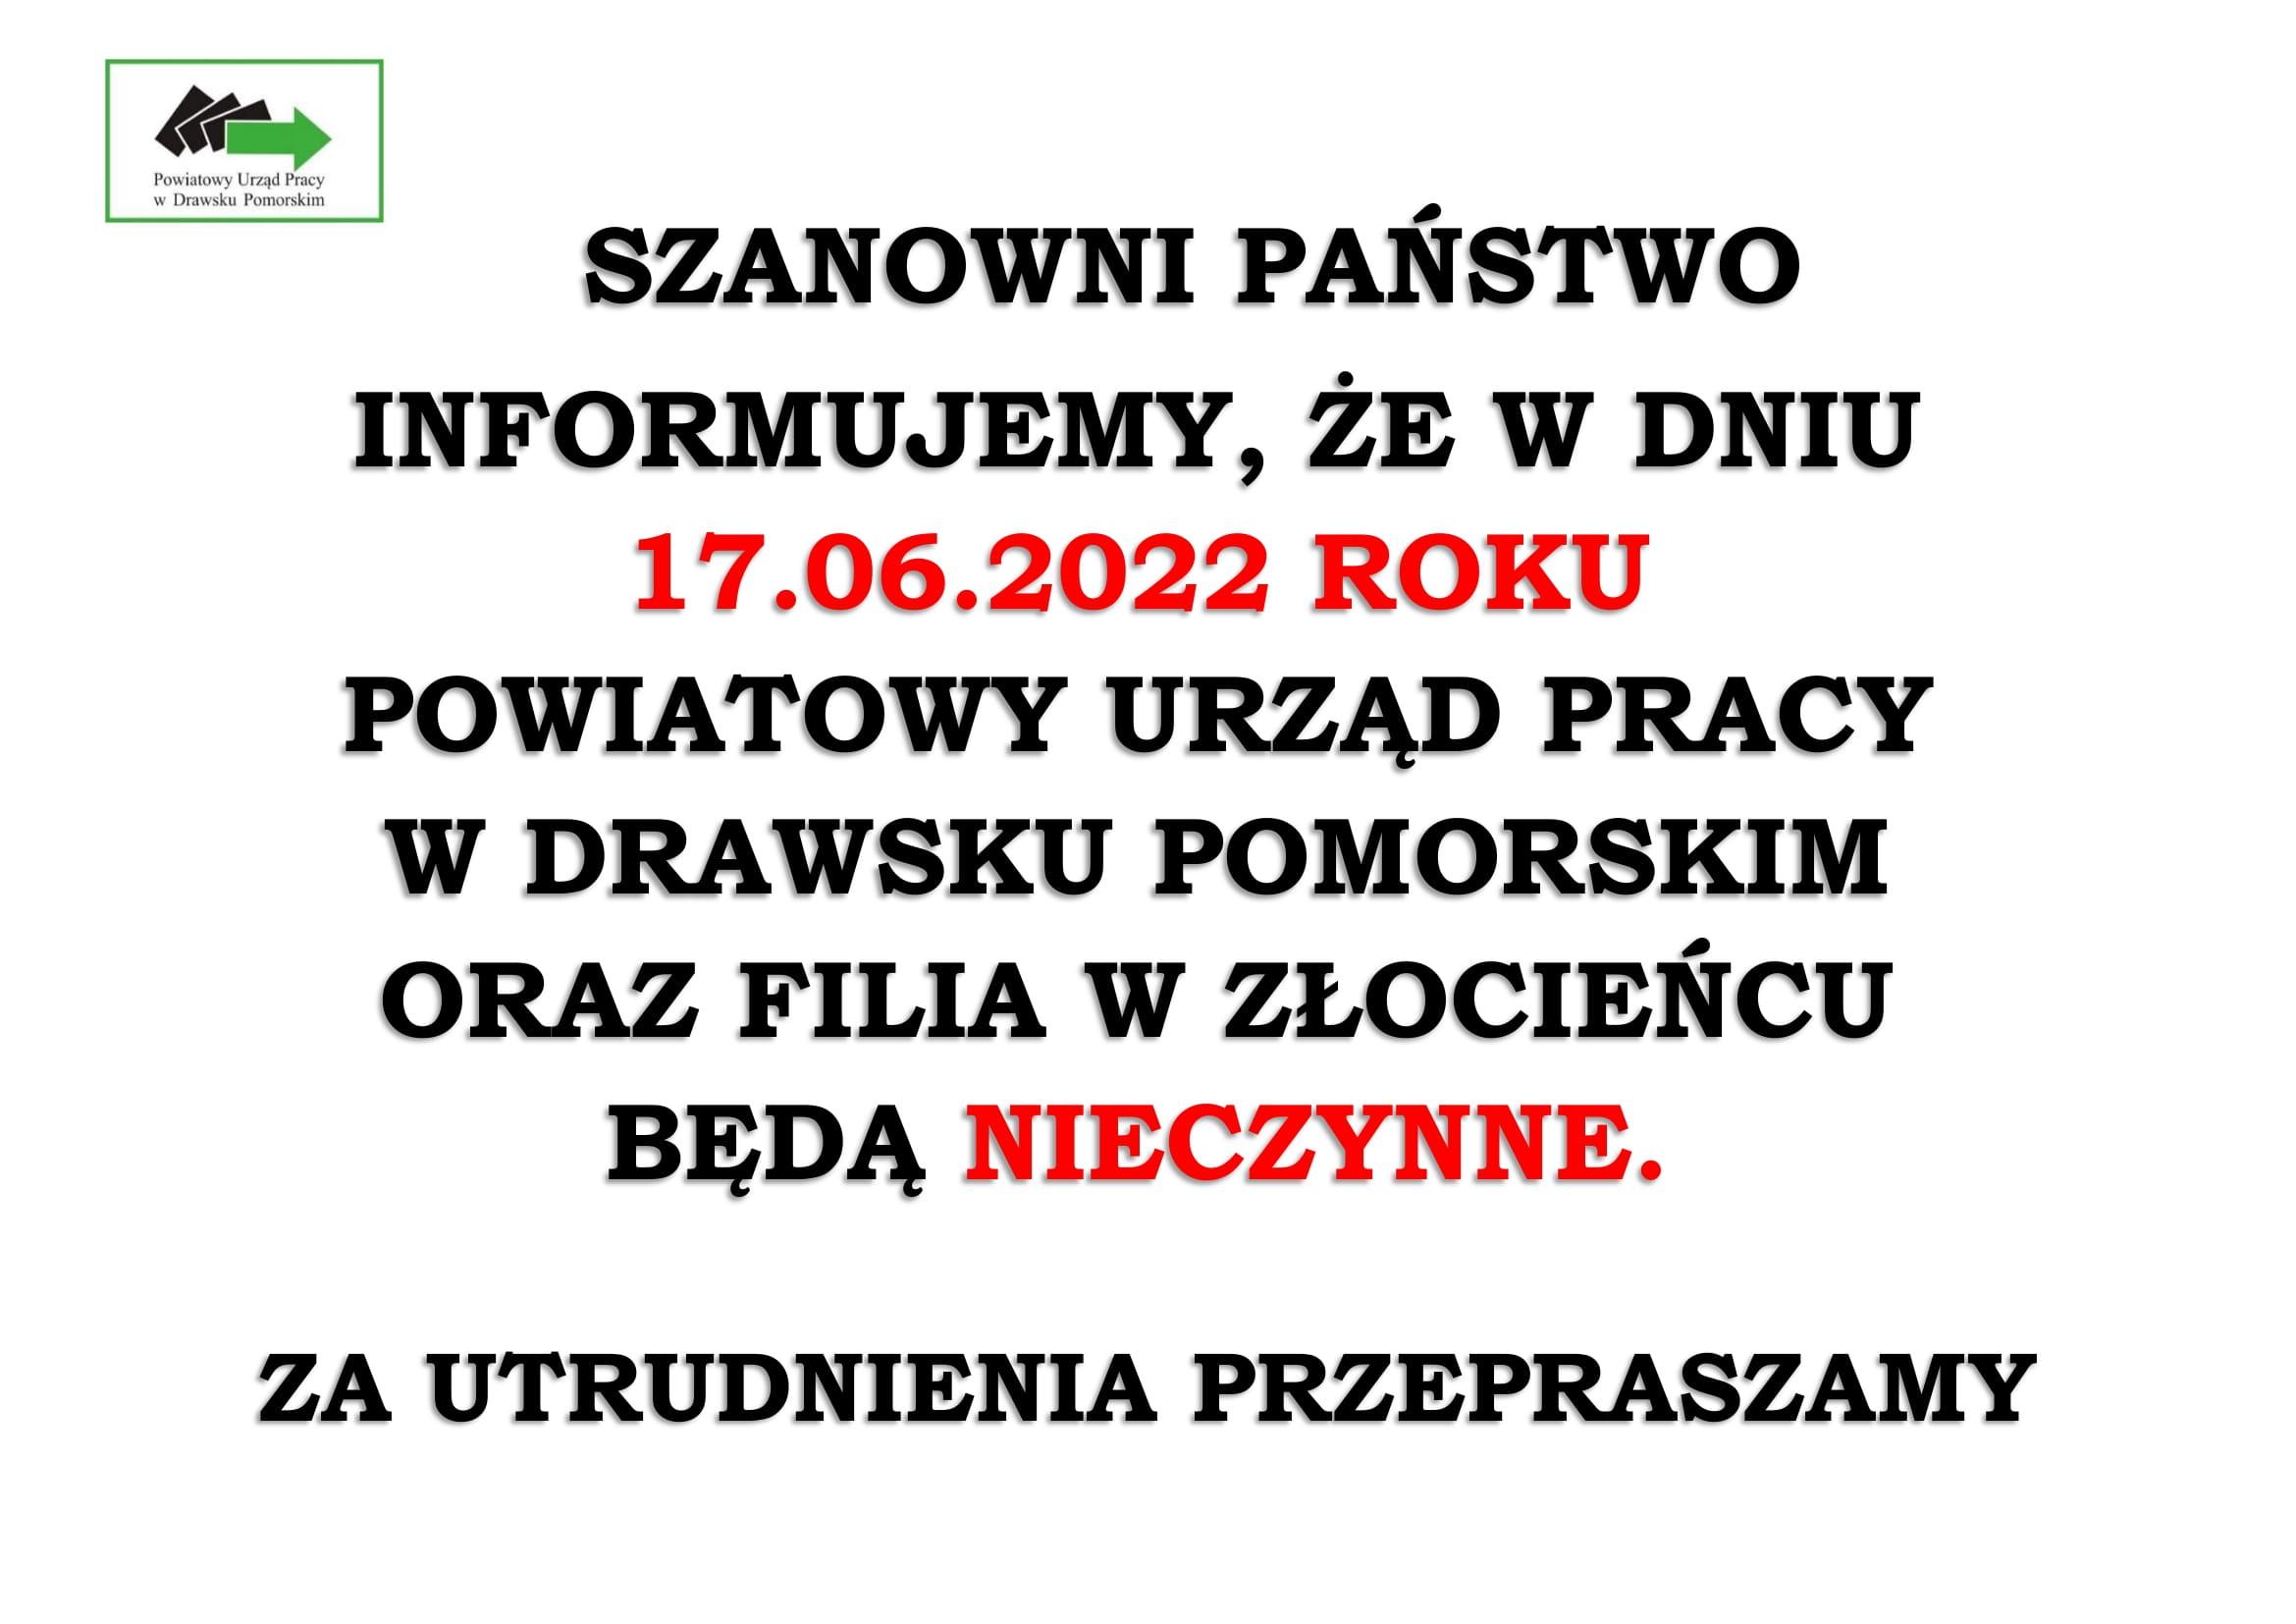 W dniu 17.06.2022 r. Urząd Pracy w Drawsku Pomorskim oraz Filia w Złocieńcu będą nieczynne, za utrudnienia przepraszamy.